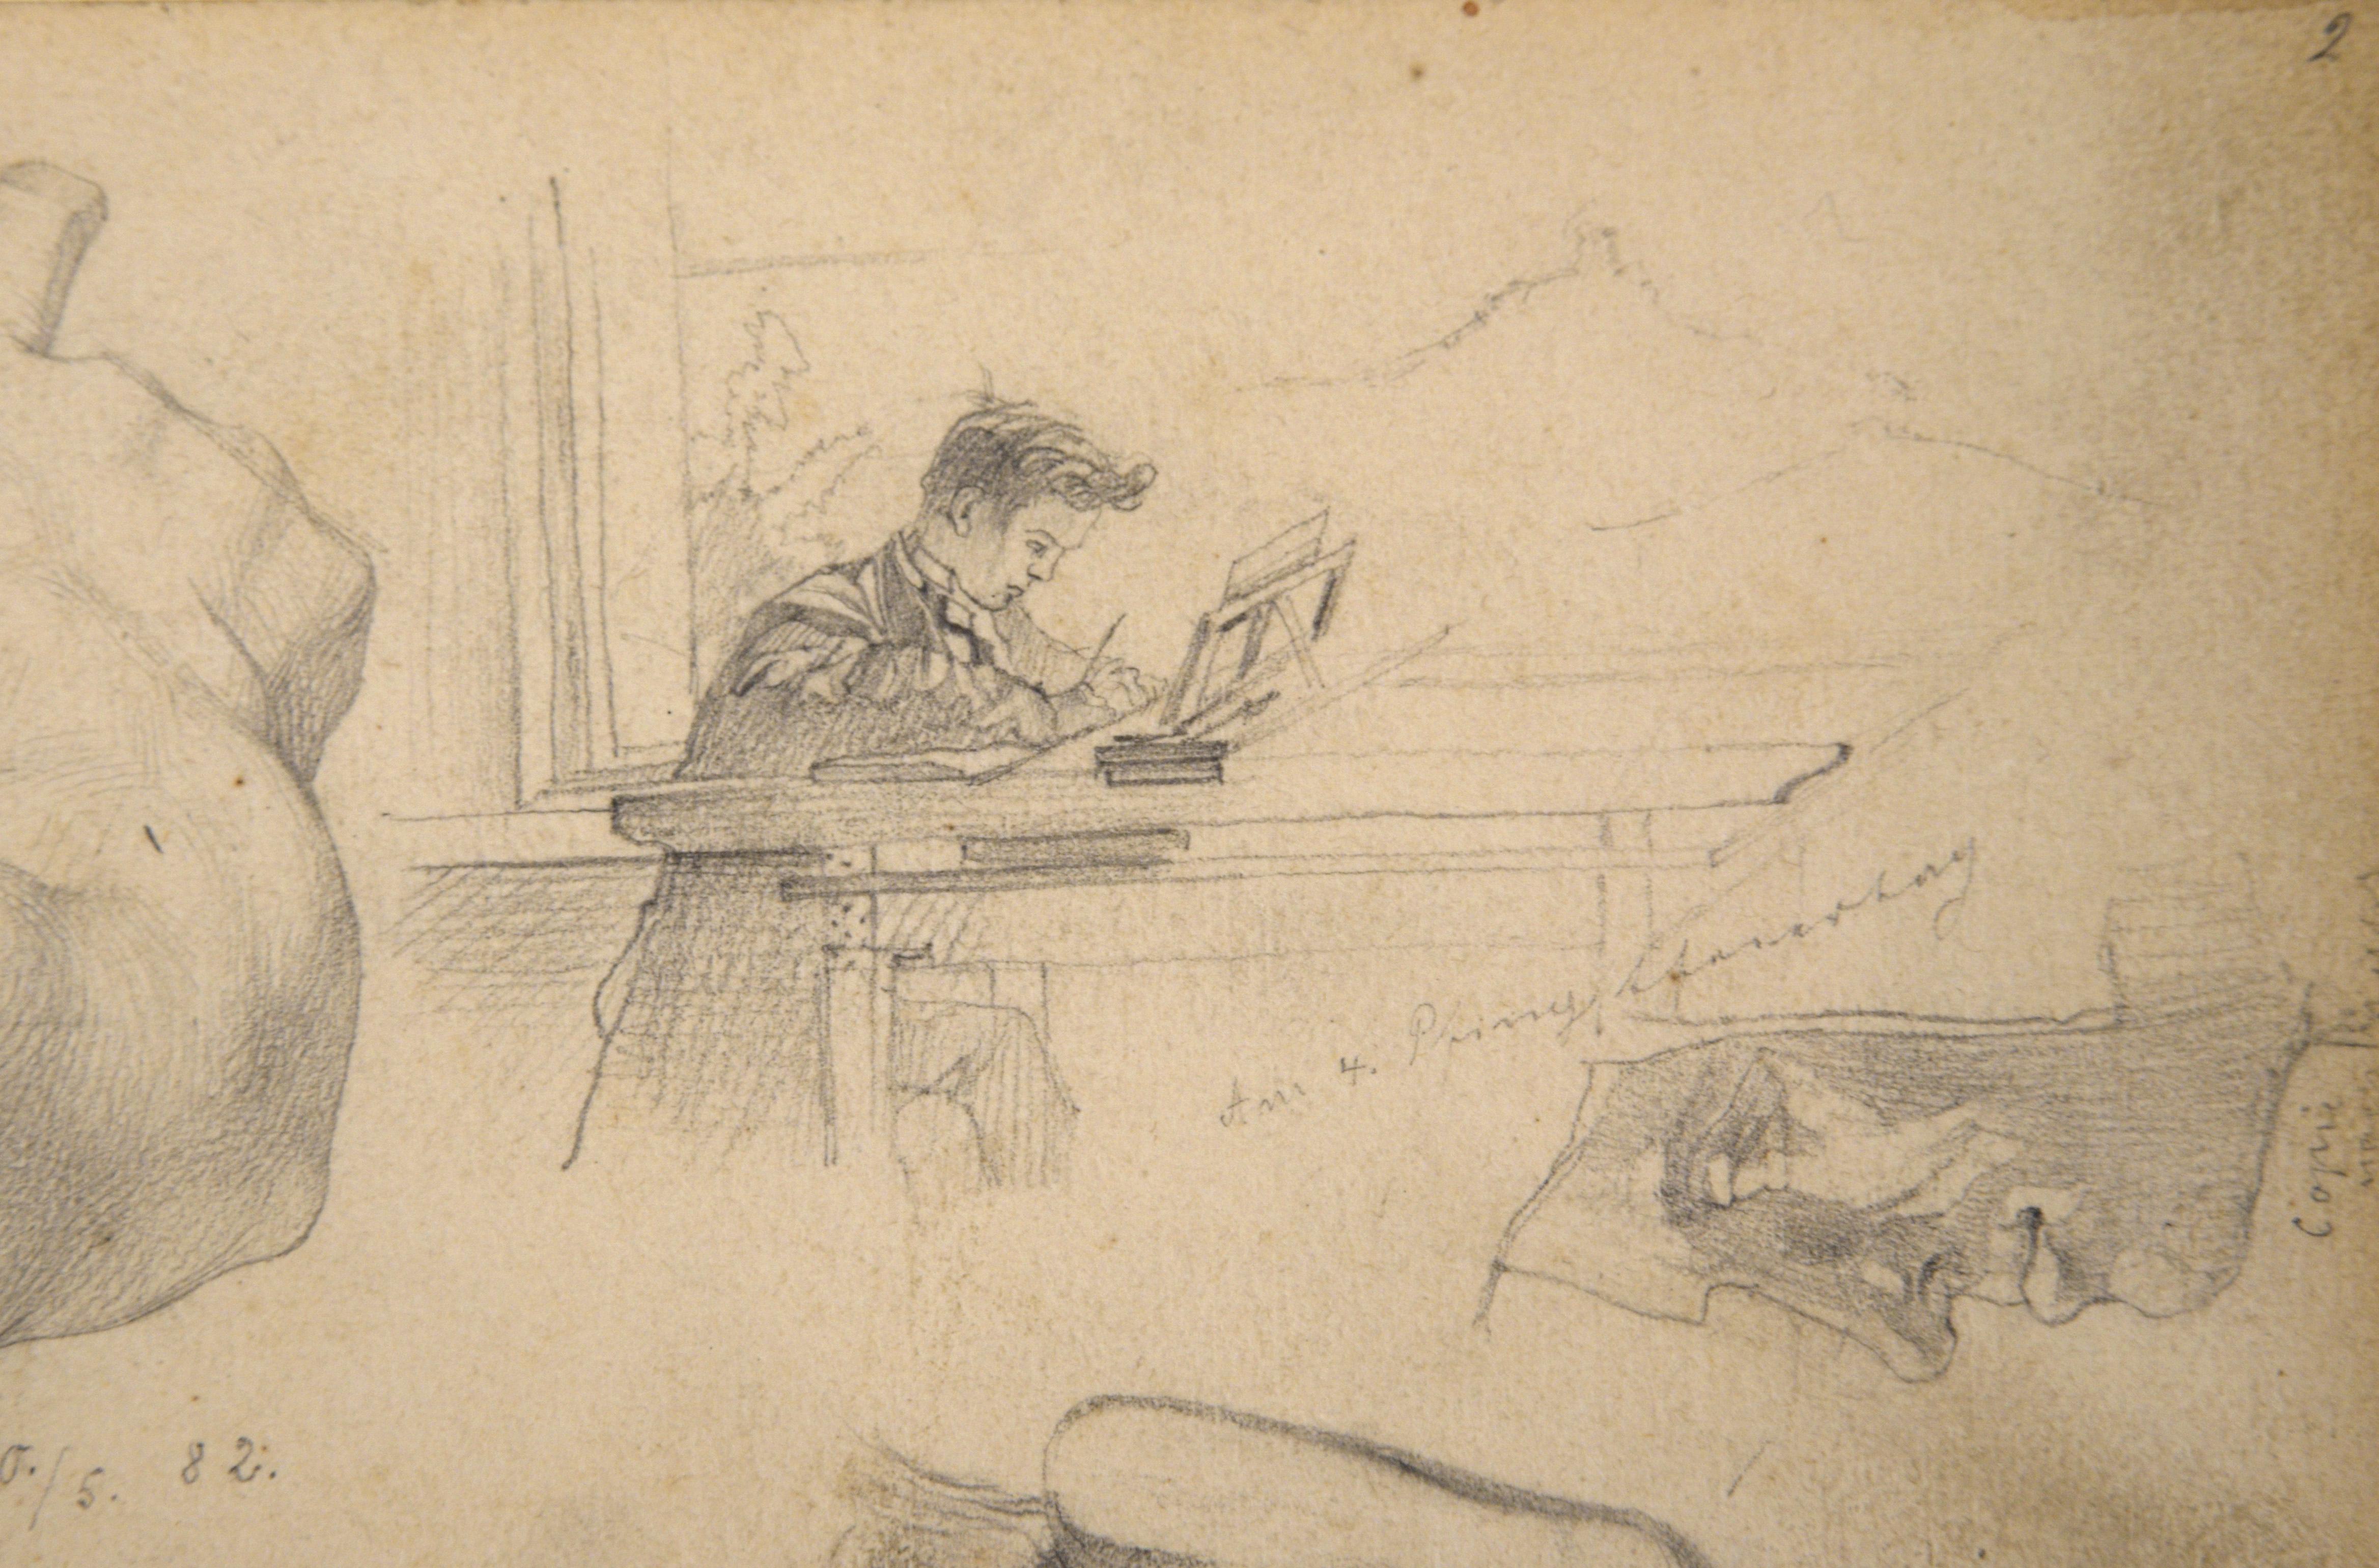 Page de carnet de croquis avec figures et détails anatomiques au crayon sur papier

Dessins d'un homme à un bureau et autres sections figuratives par un artiste inconnu (19e siècle). Sur le côté gauche de la page, une épaule, un bras et une main